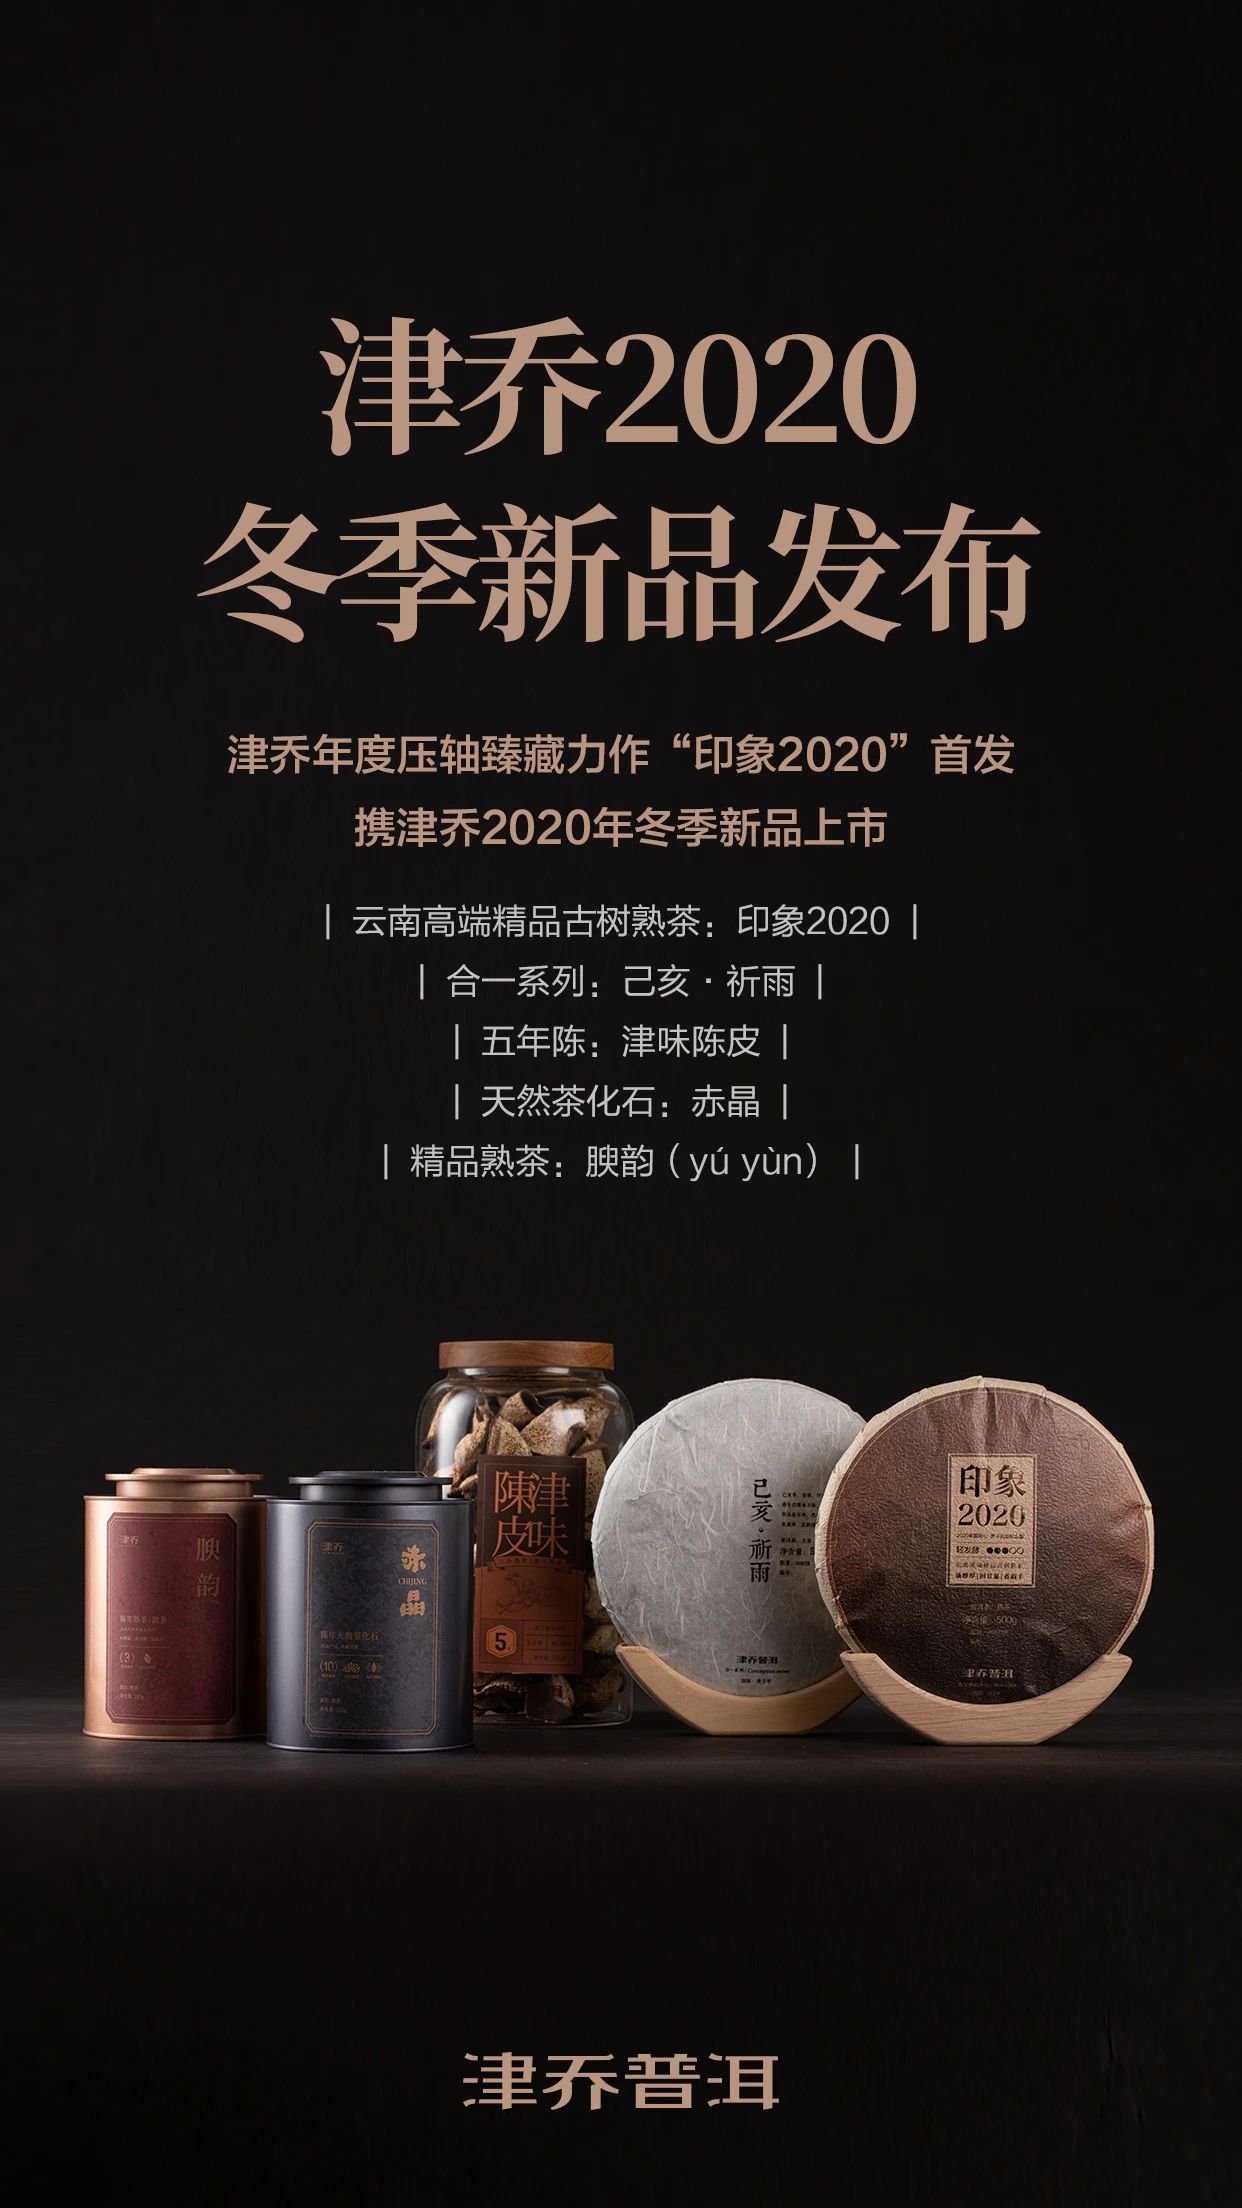 【动态】津乔2020冬季产品发布，标杆熟茶“印象”携新上市